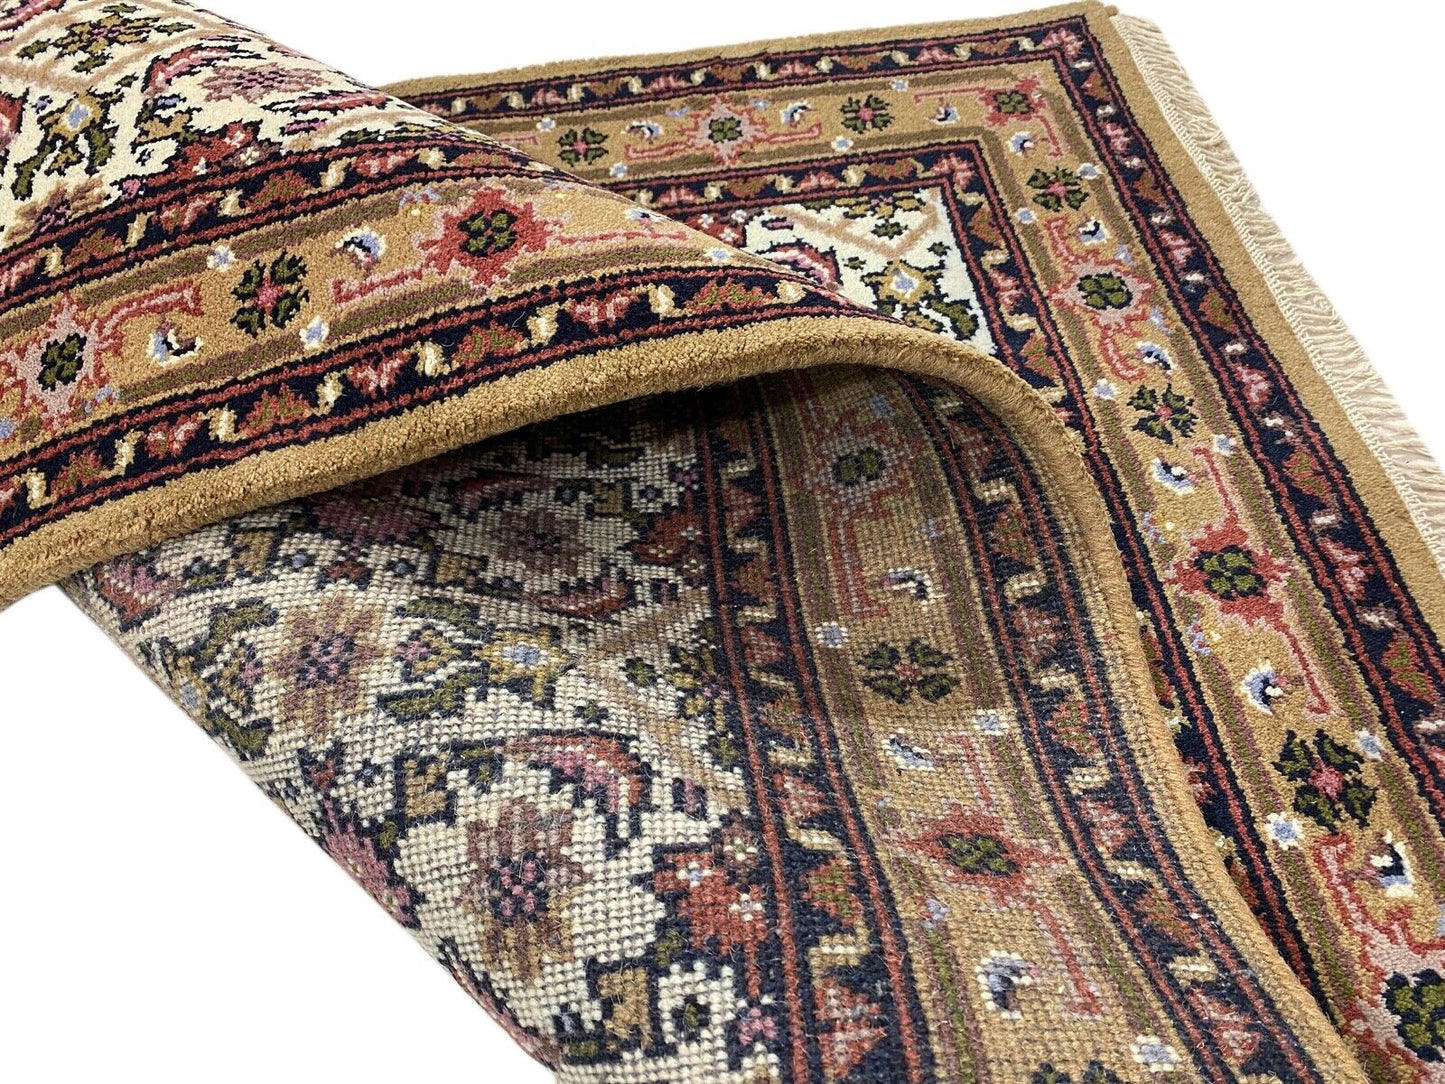 Herati Beige Braun Teppich Wolle Handgeknüpft 100% Schurwolle 140X200 cm D6